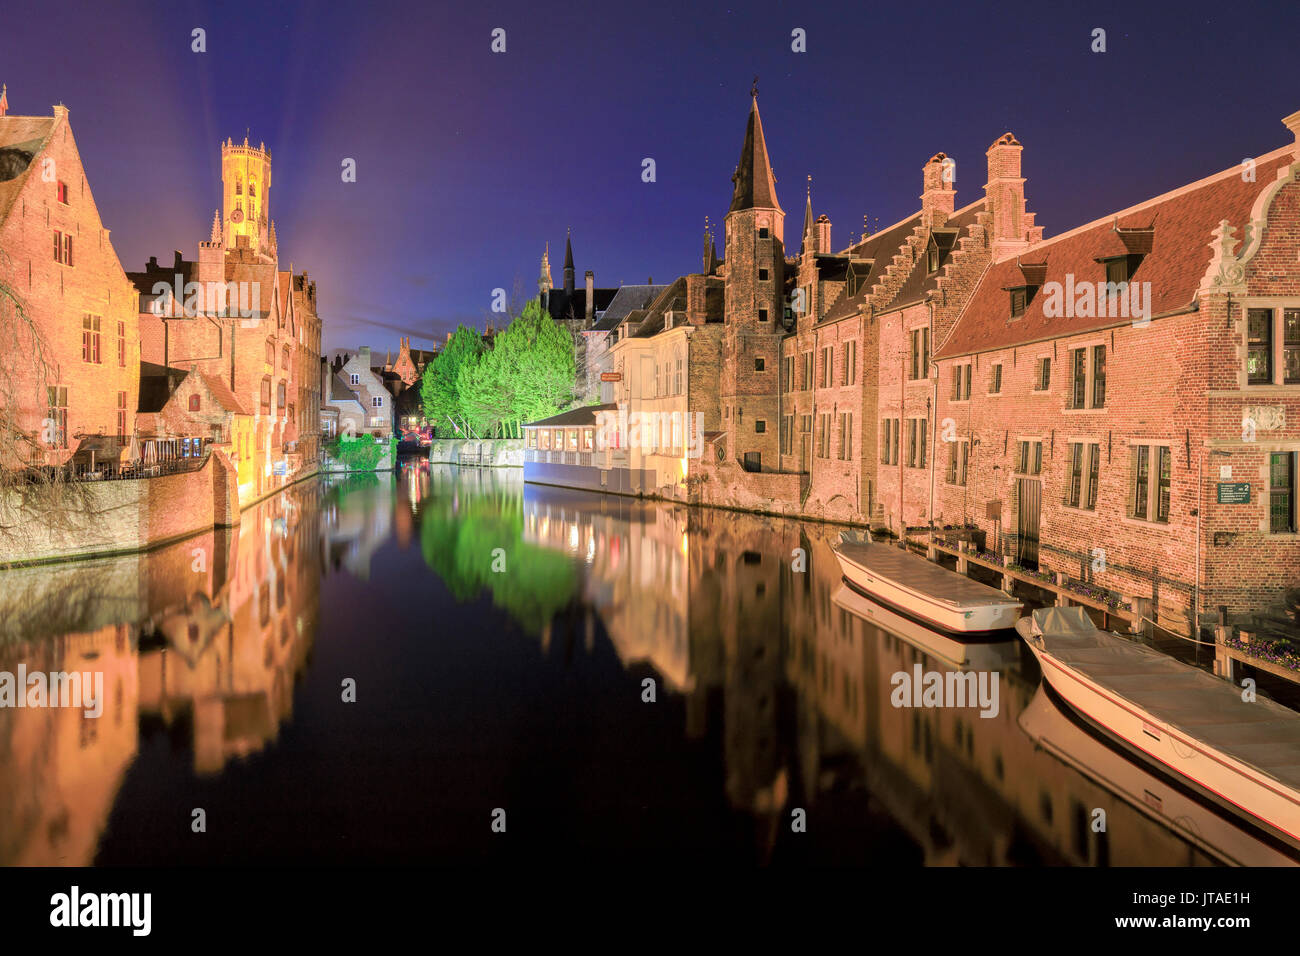 Il campanile medievale e gli edifici storici sono riflesse in Rozenhoedkaai canal di notte, Sito Patrimonio Mondiale dell'UNESCO, Bruges, Fiandre Occidentali, Belgio, Foto Stock